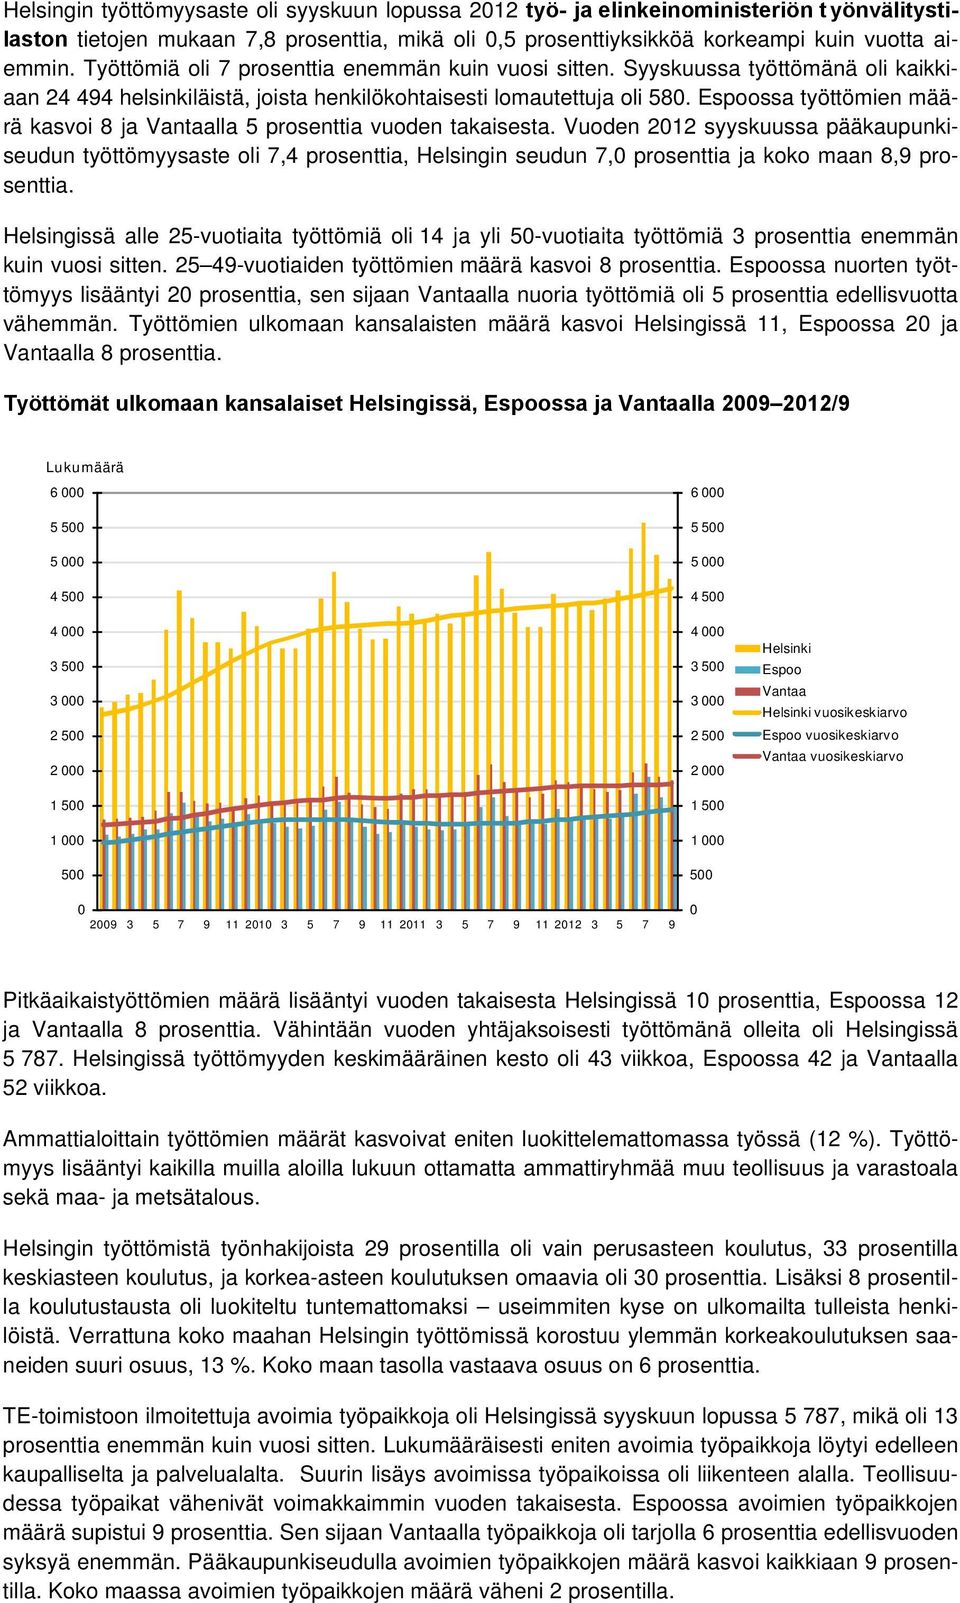 Espoossa työttömien määrä kasvoi 8 ja Vantaalla 5 prosenttia vuoden takaisesta.